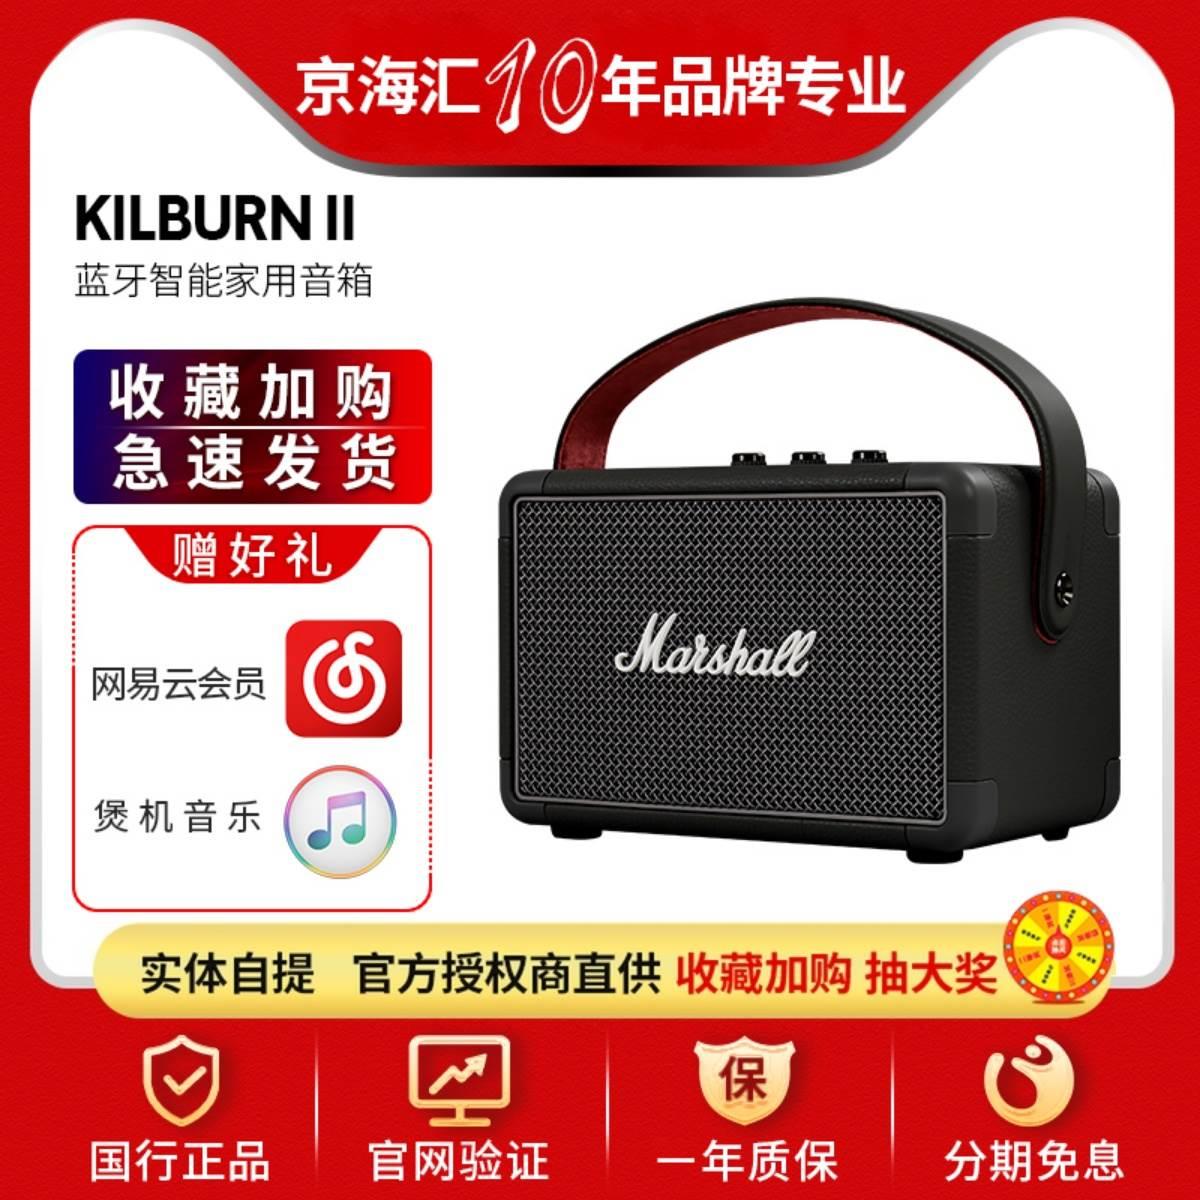 KILBURN II马歇尔2代无线蓝牙音箱便携式手提音响 影音电器 无线/蓝牙音箱 原图主图